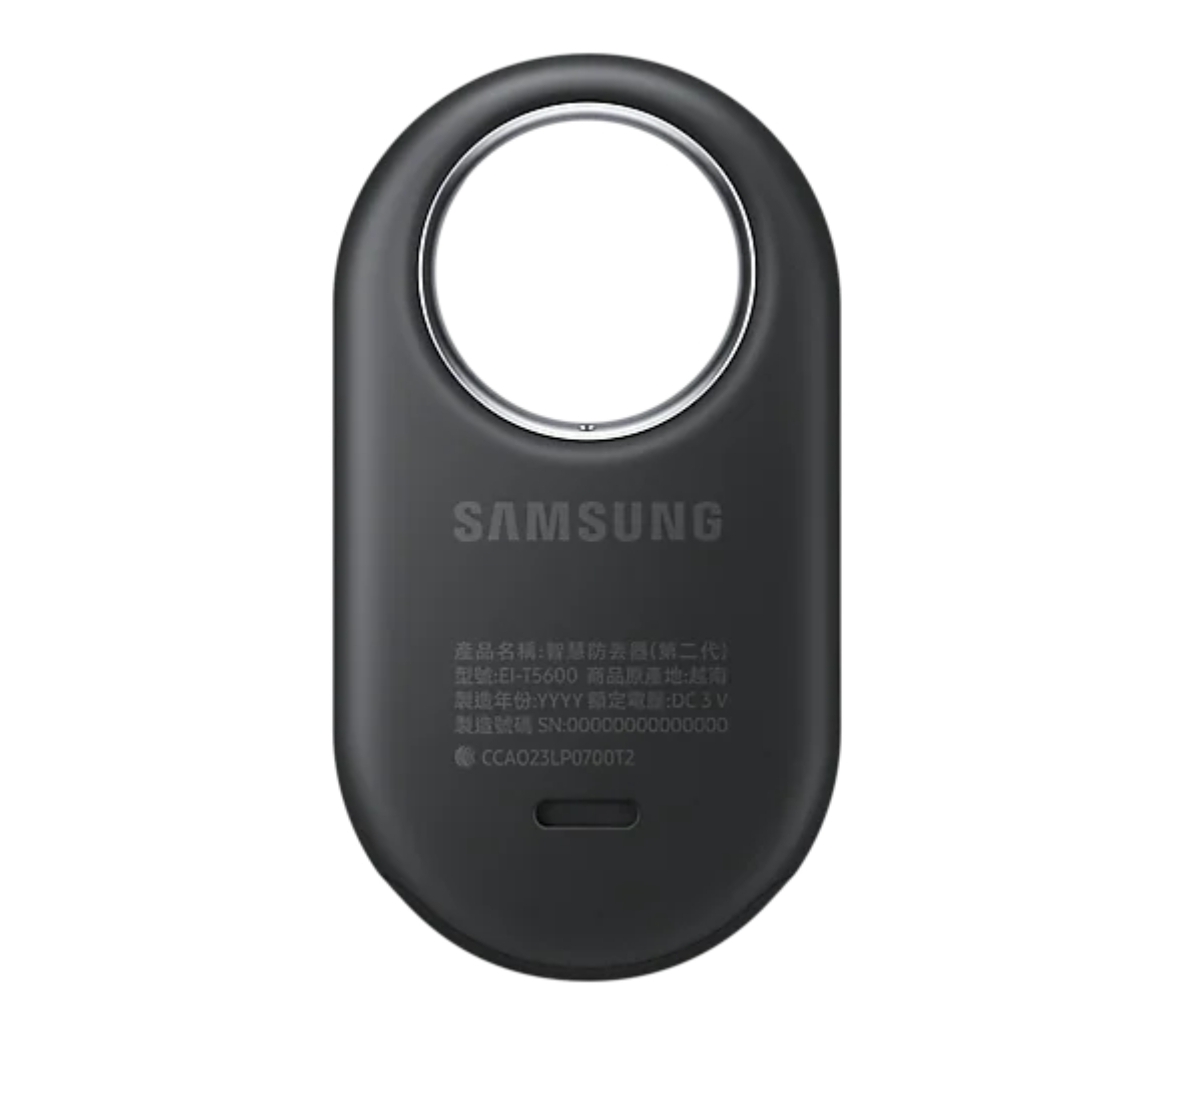 Thiết Bị Định Vị Theo Dõi Đồ Vật Samsung Galaxy Smart Tag 2 ( Model EI-T5600) - Hàng Chính Hãng